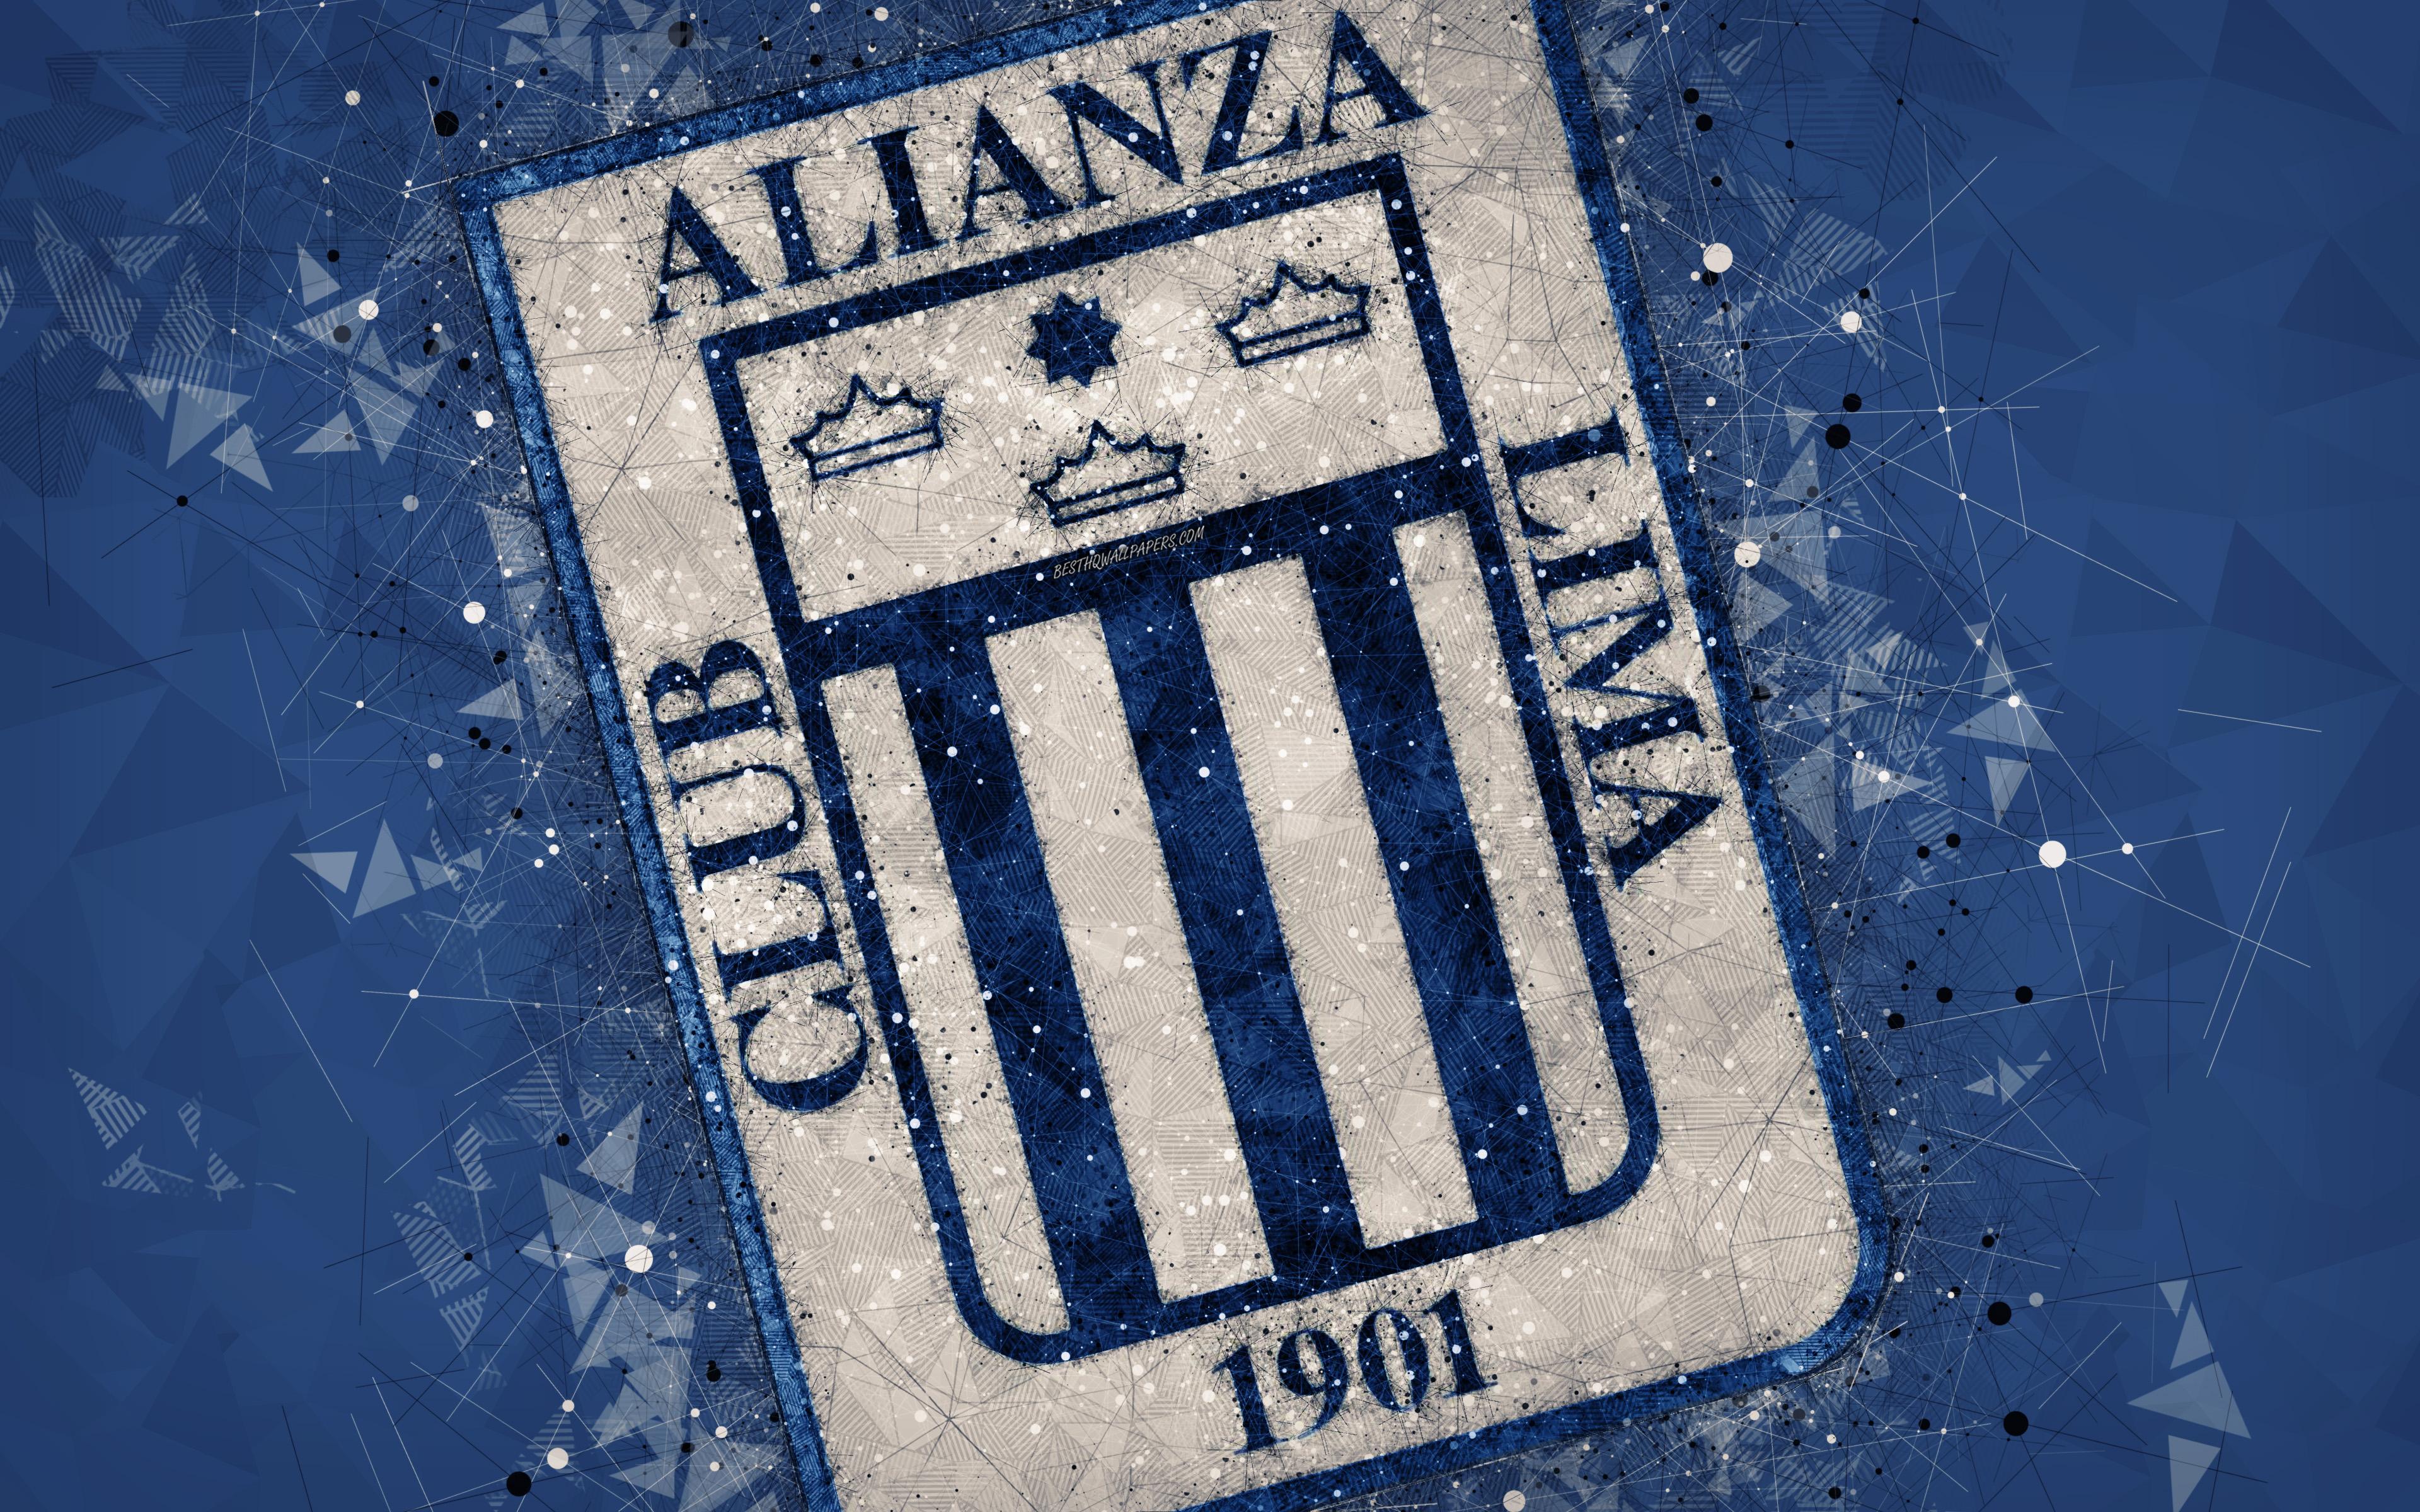 باشگاه فوتبال آلیانزا لیما (Club Alianza Lima)